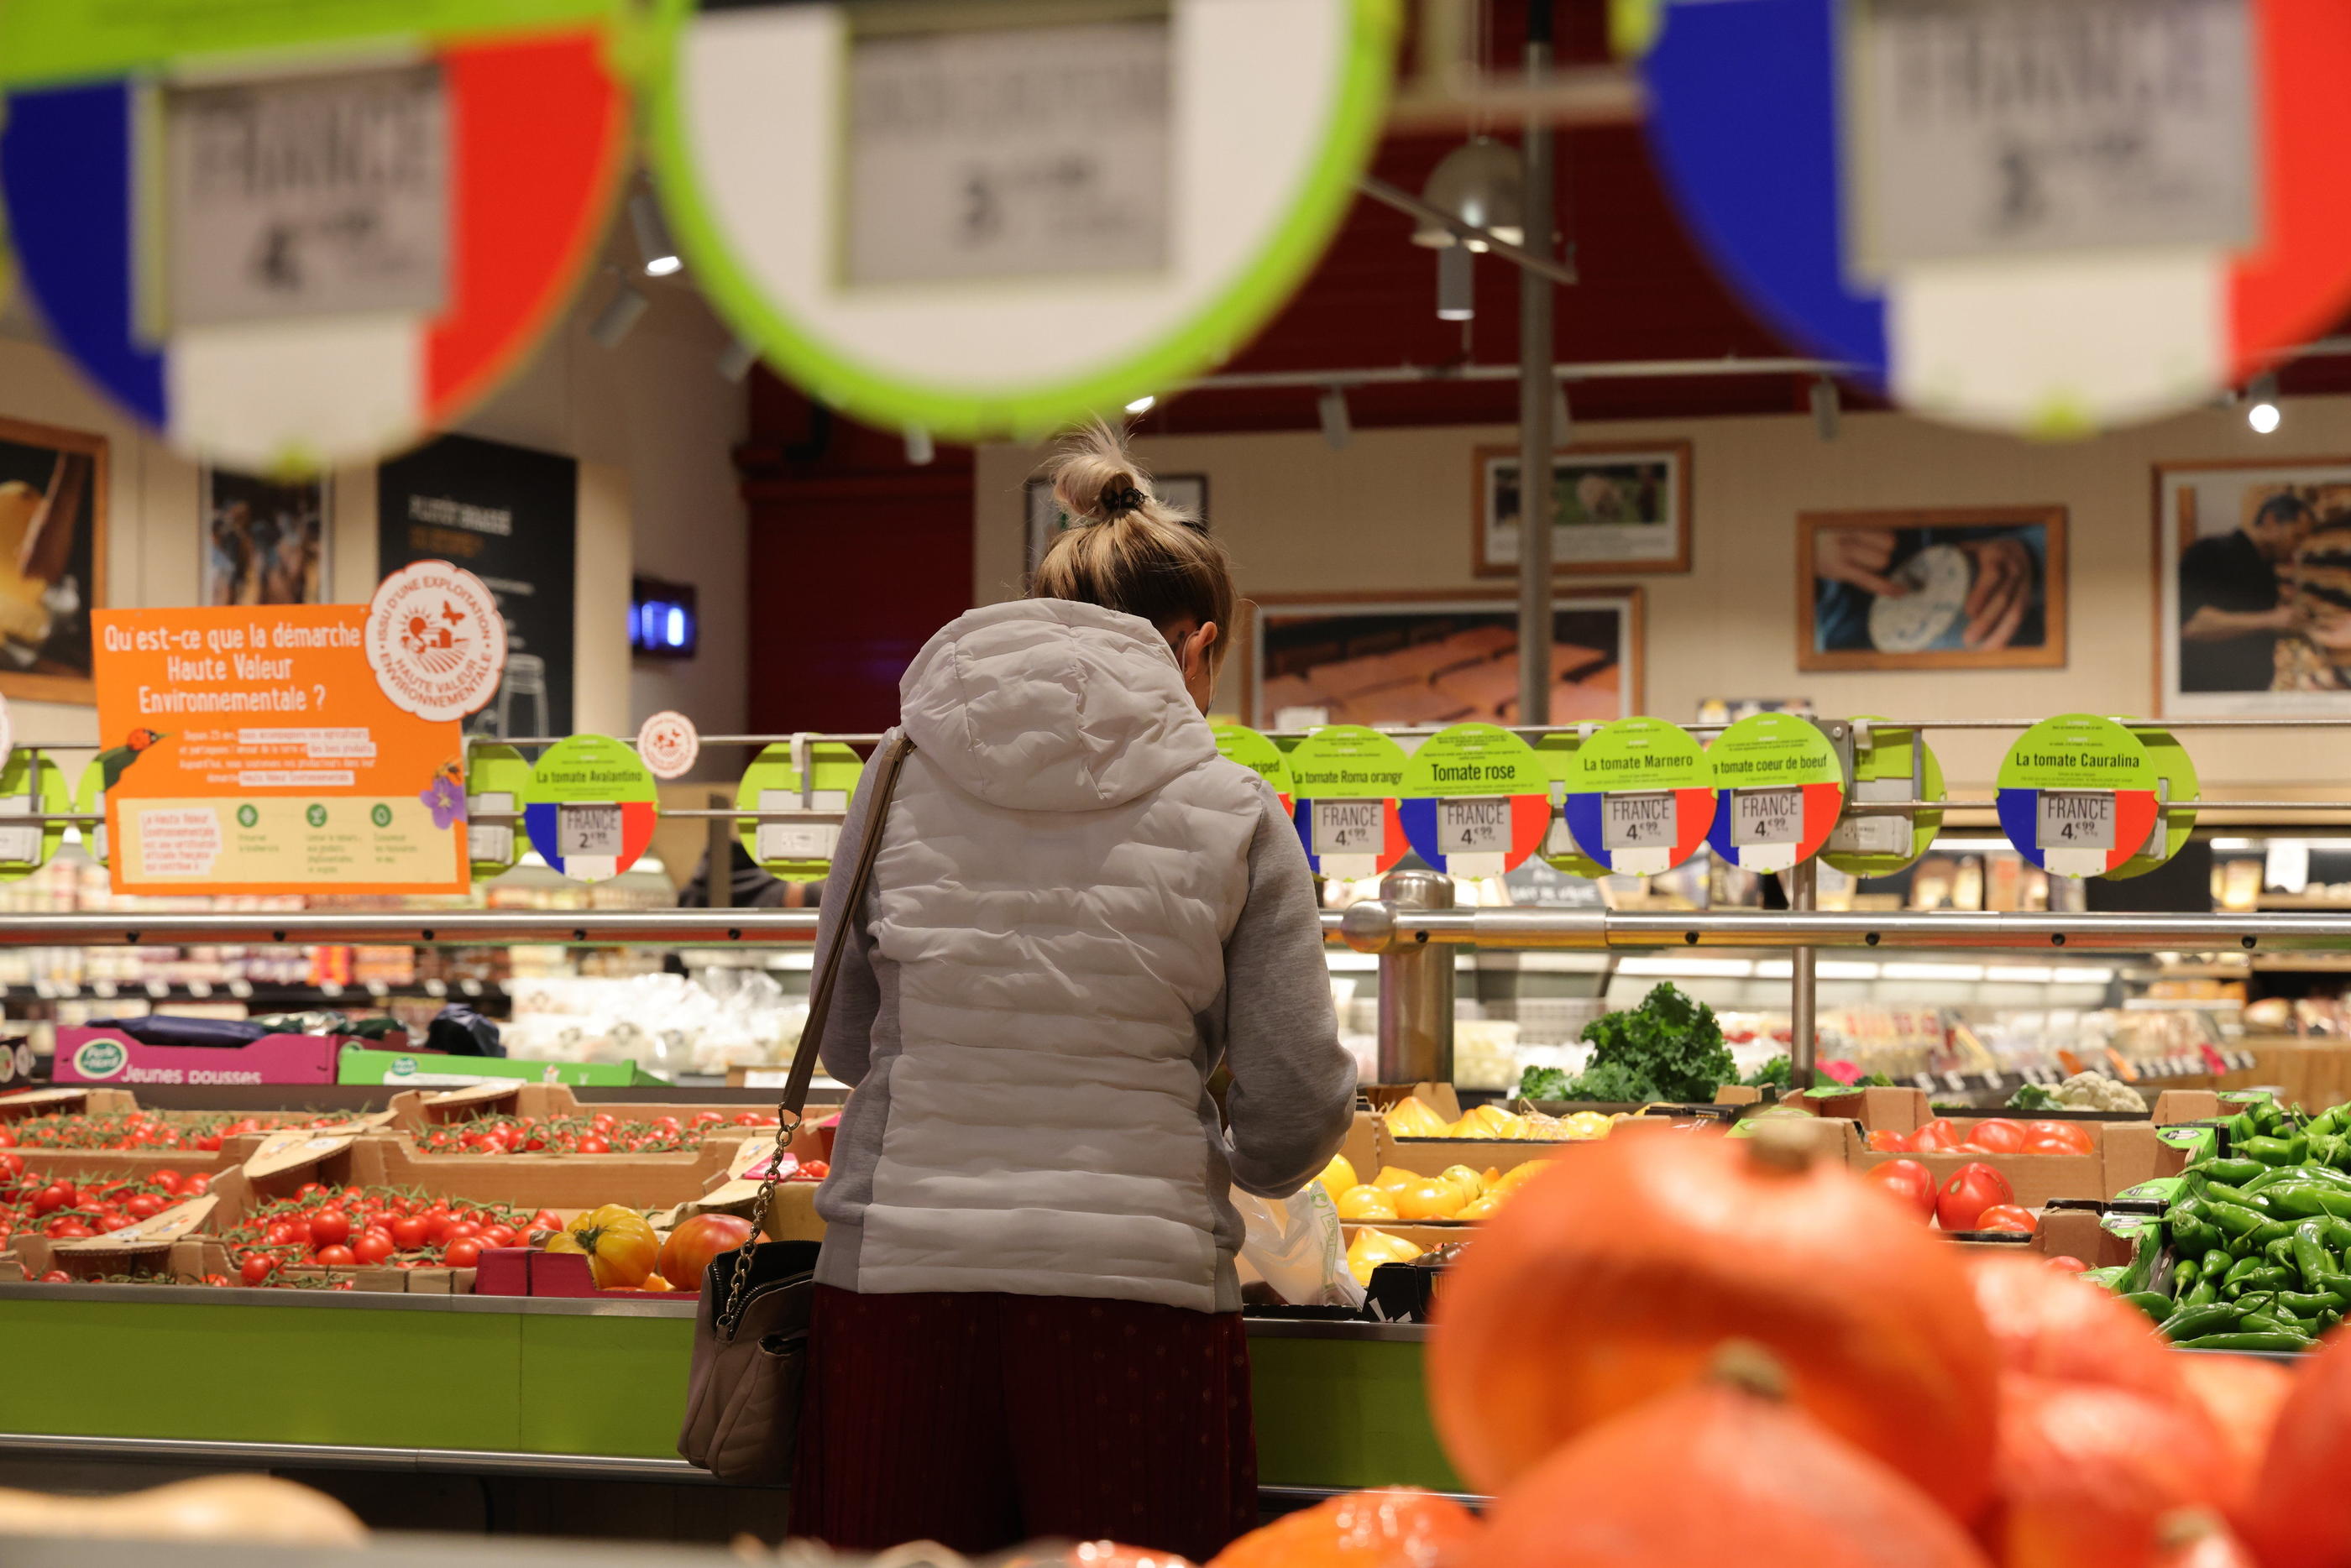 Les magasins Grands Frais sont connus pour leurs rayons de fruits et légumes variés. (illustration) LP/Philippe Lavieille